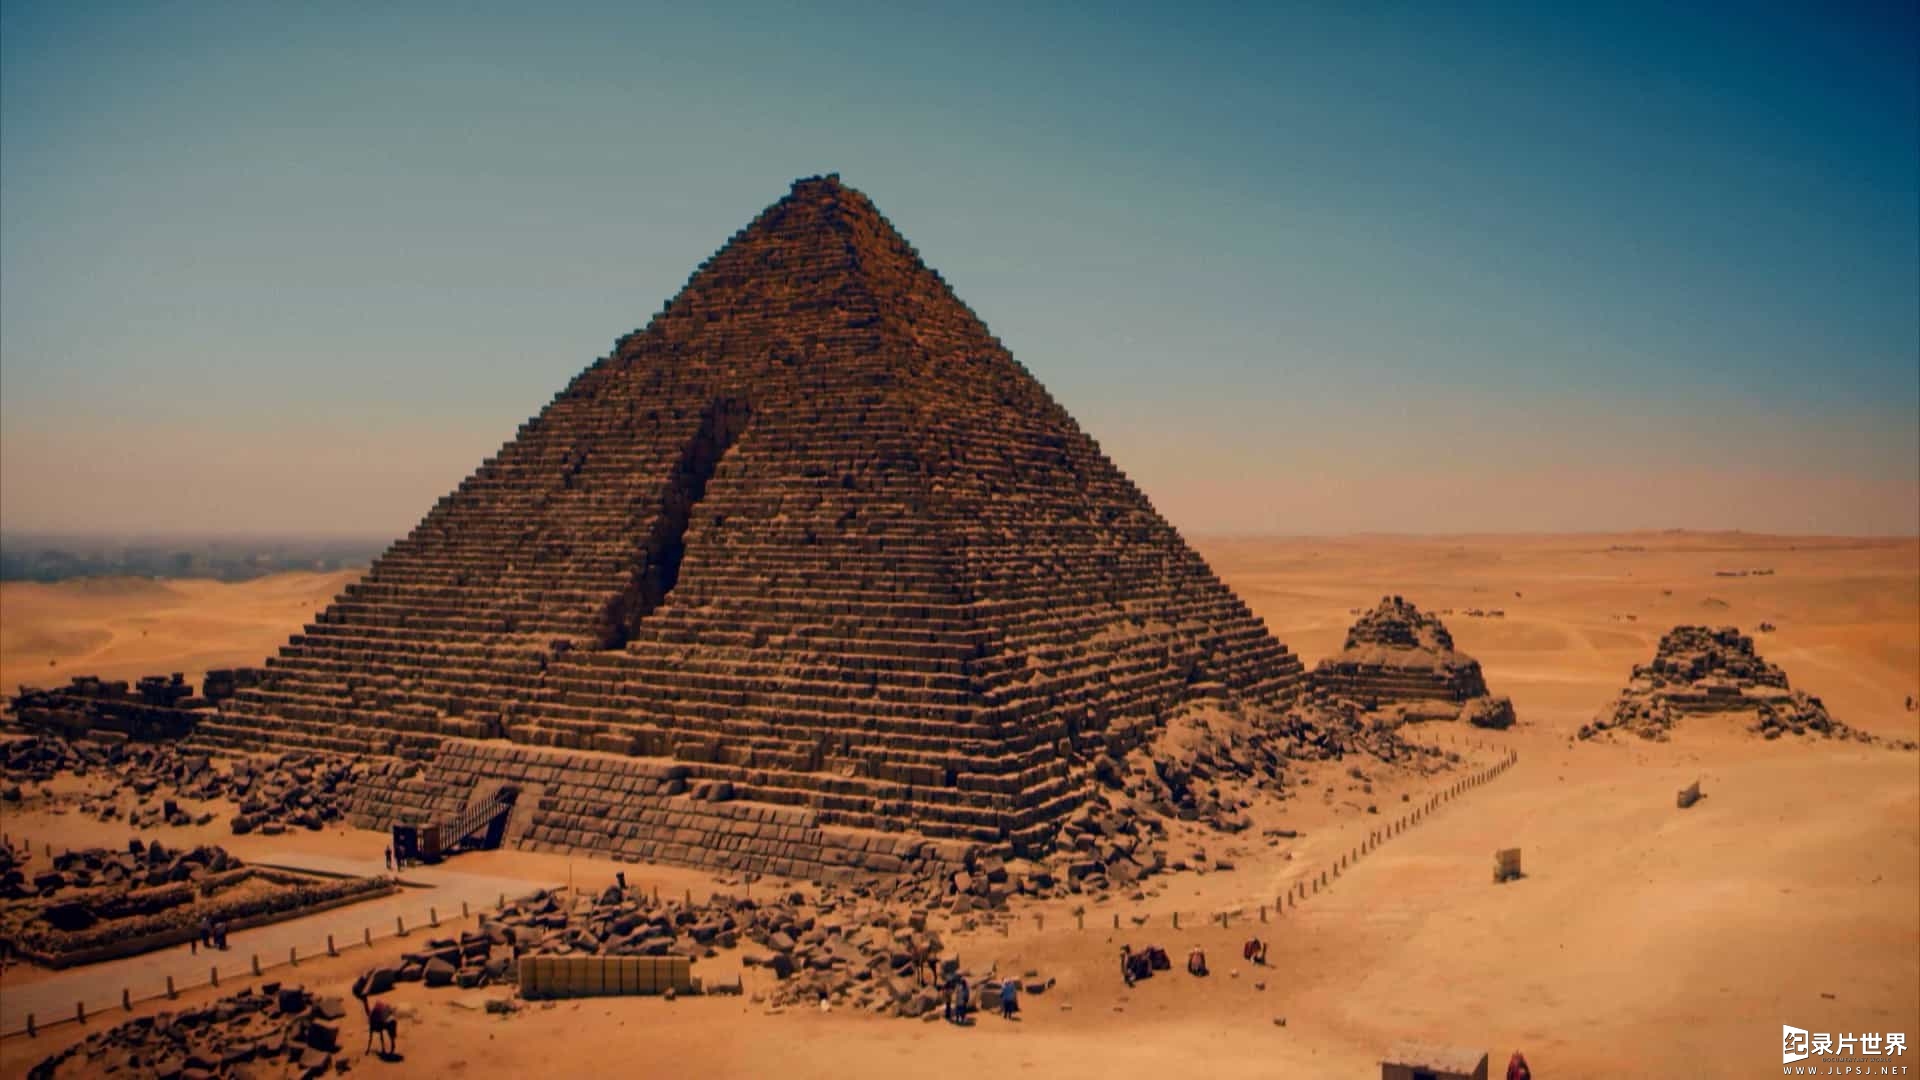 国家地理/埃及考古新发现纪录片《失落的埃及瑰宝/埃及失落宝藏 Lost Treasures of Egypt 2019》第一季全5集